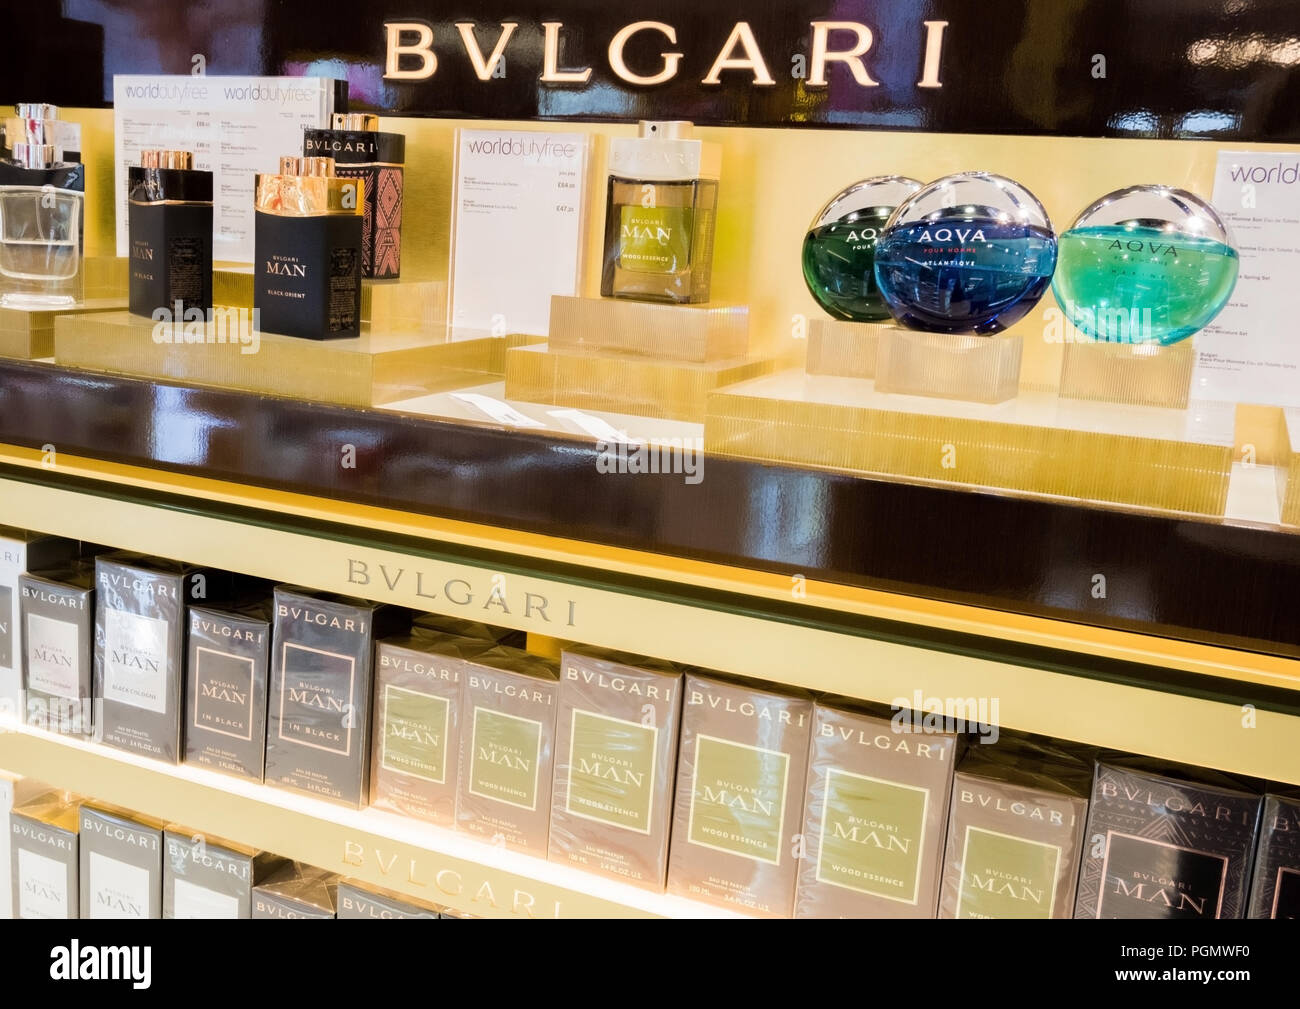 Bvlgari Perfume High Resolution Stock 